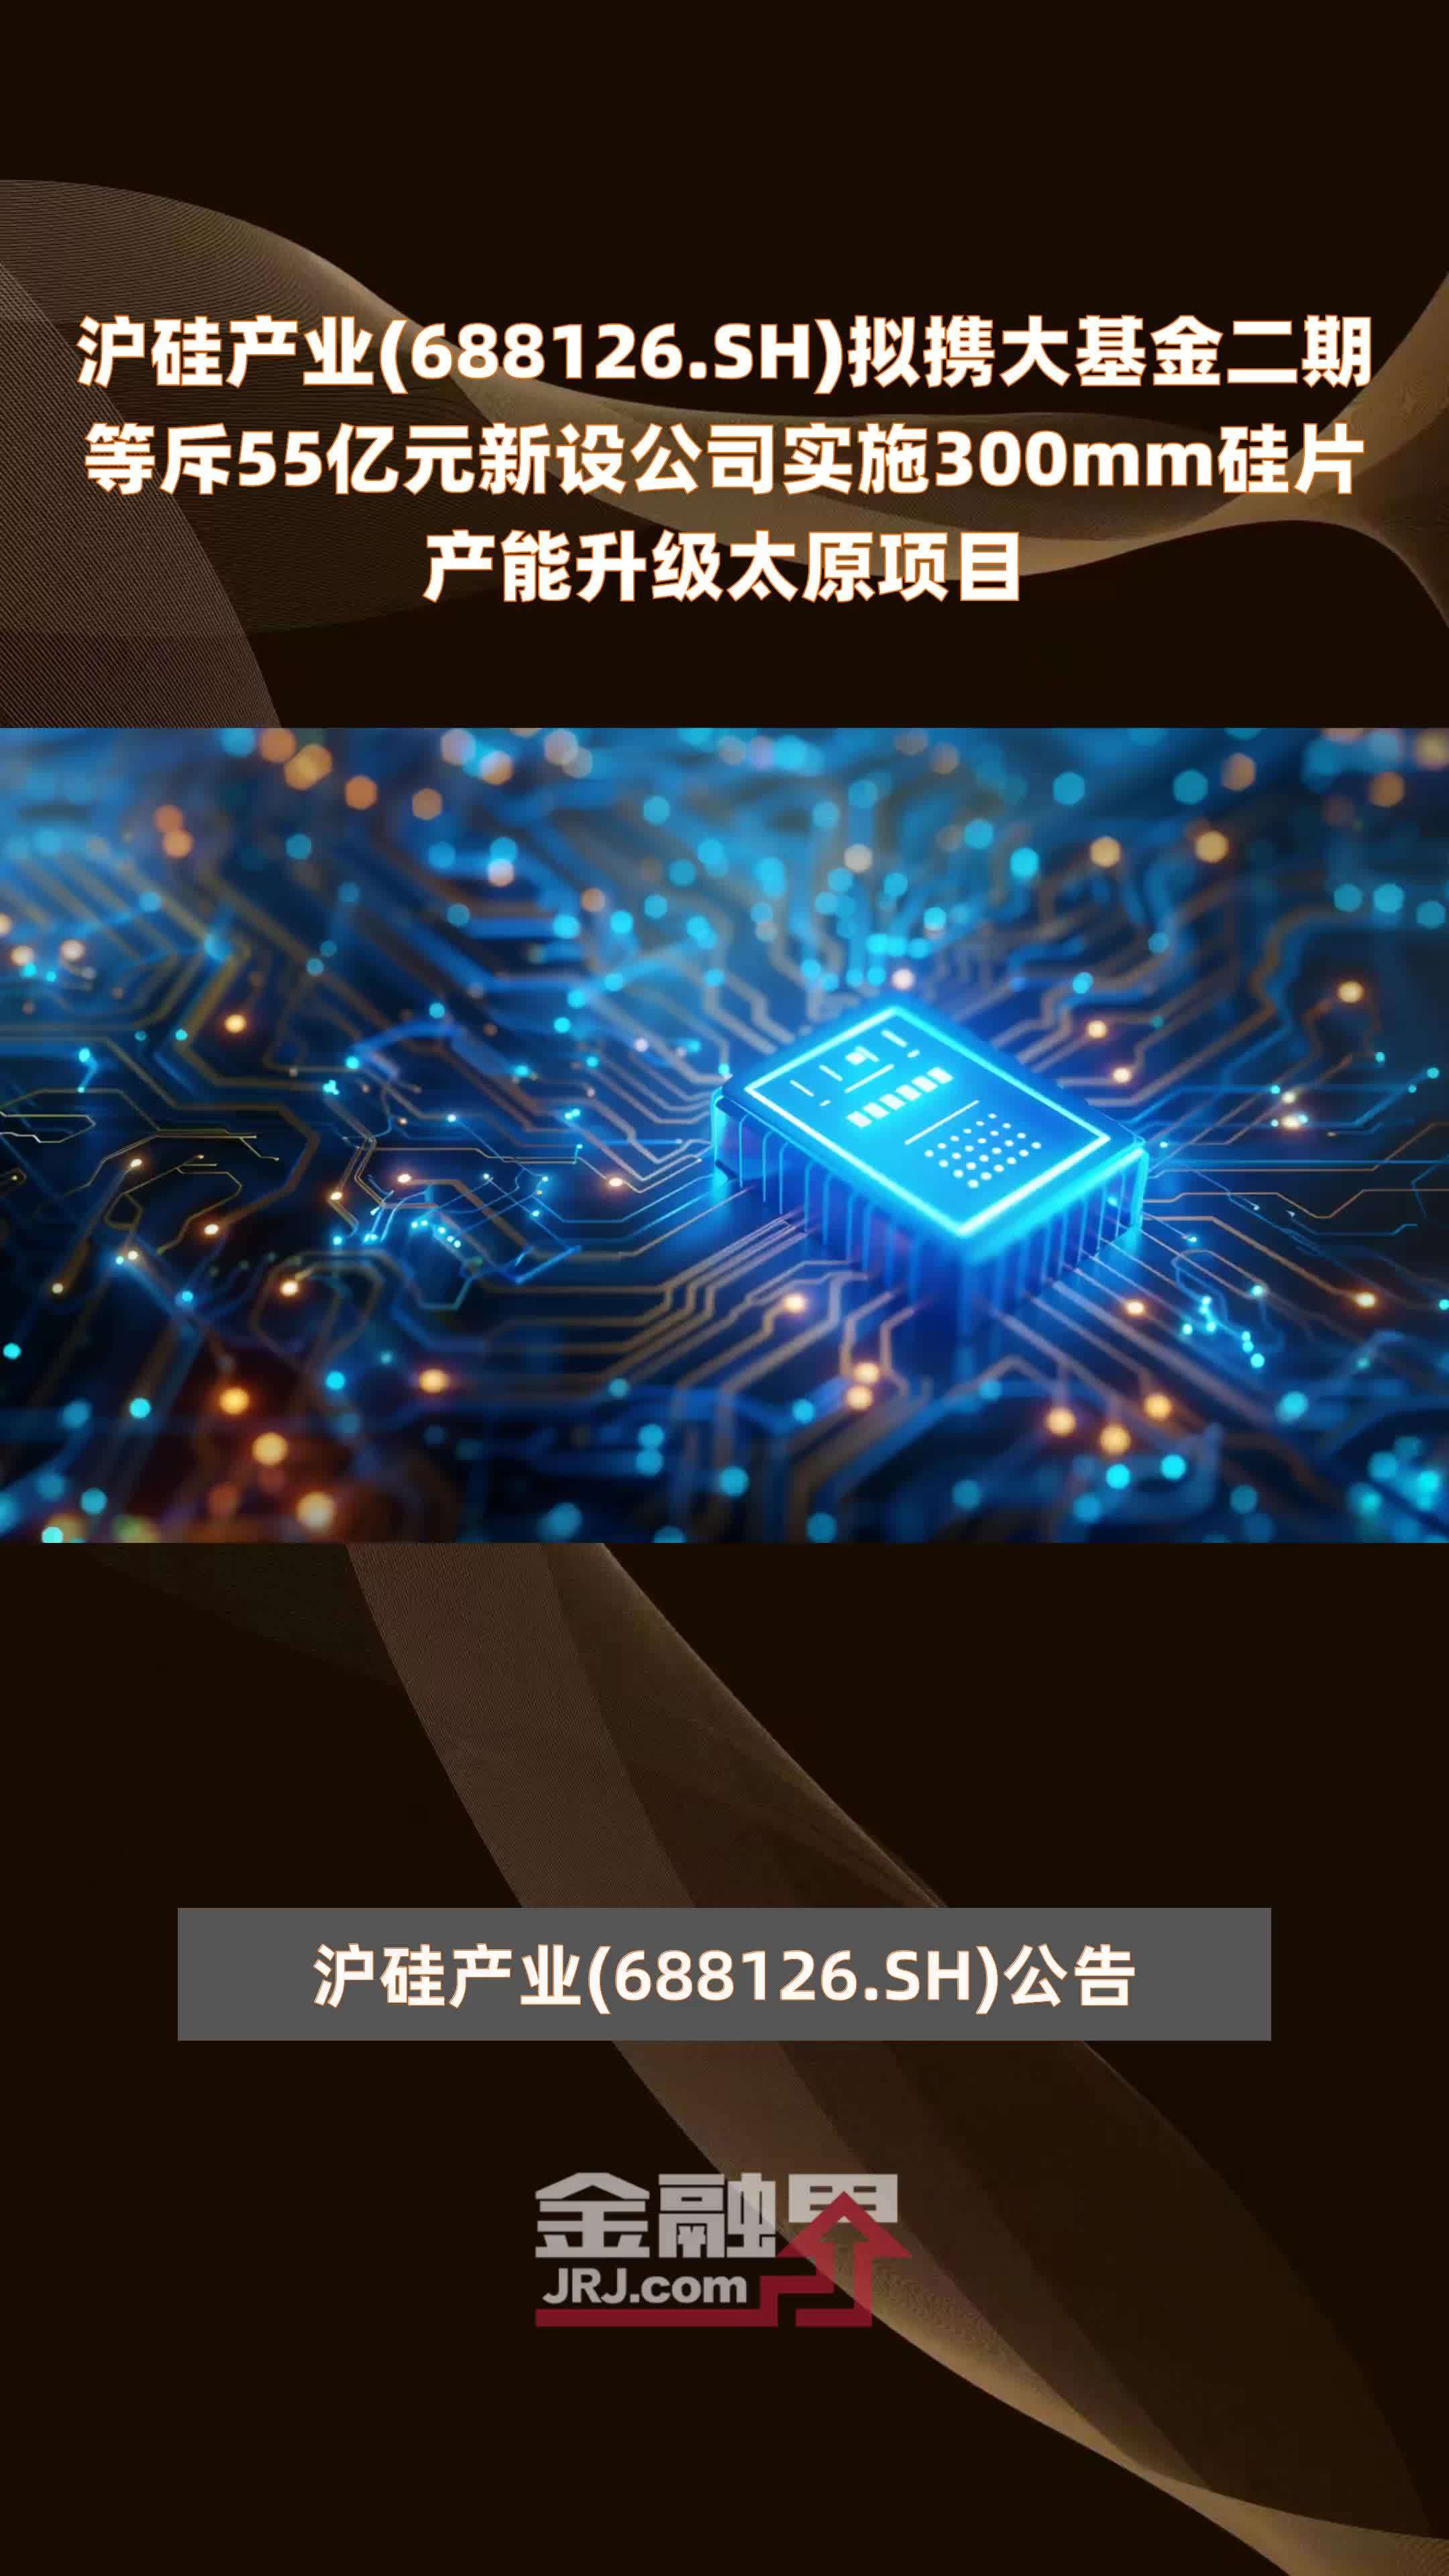 沪硅产业(688126.SH)拟携大基金二期等斥55亿元新设公司实施300mm硅片产能升级太原项目 |快报